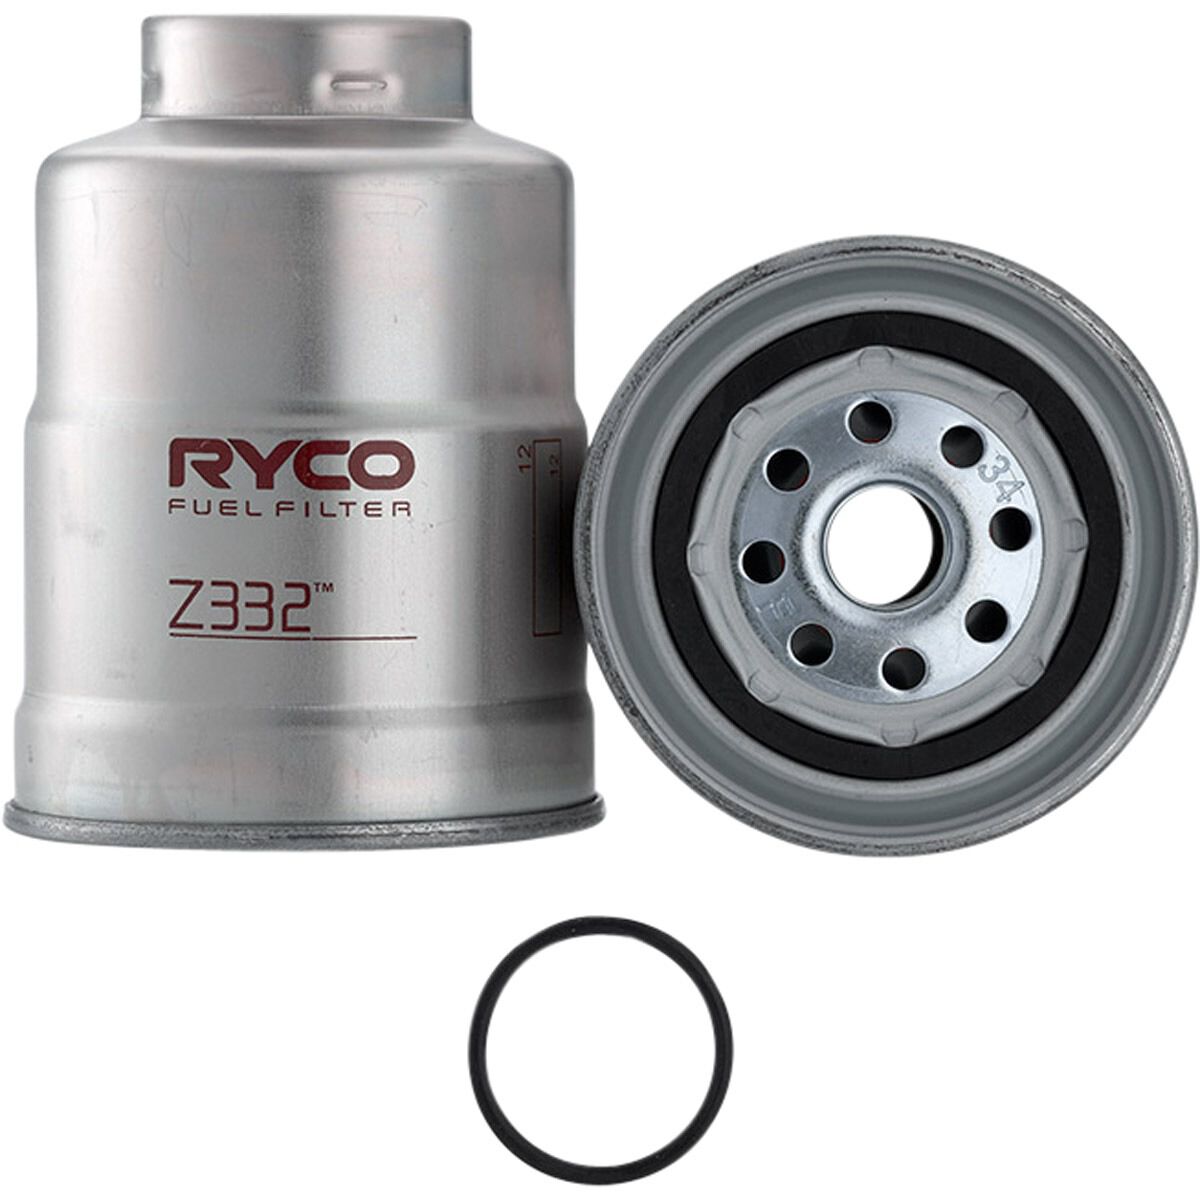 Ryco Fuel Filter - Z332, , scaau_hi-res